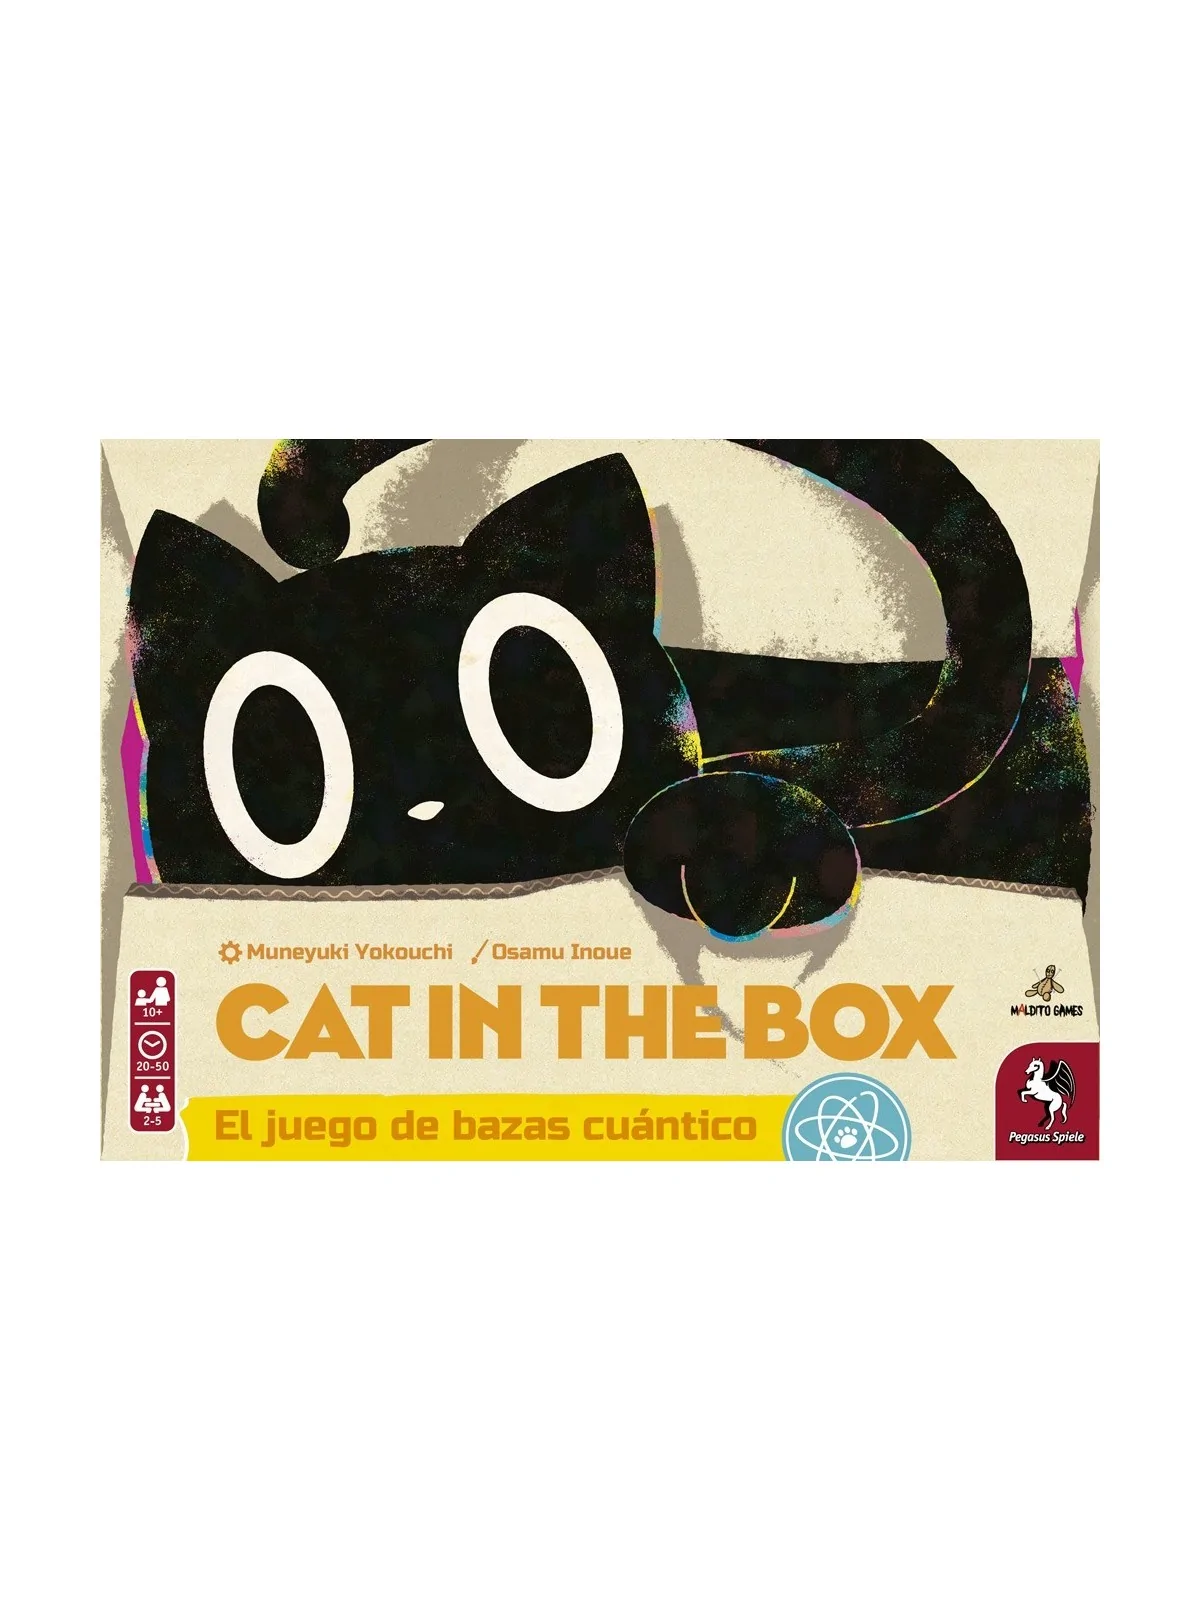 Comprar Cat in the Box [PREVENTA] barato al mejor precio 22,50 € de Ma